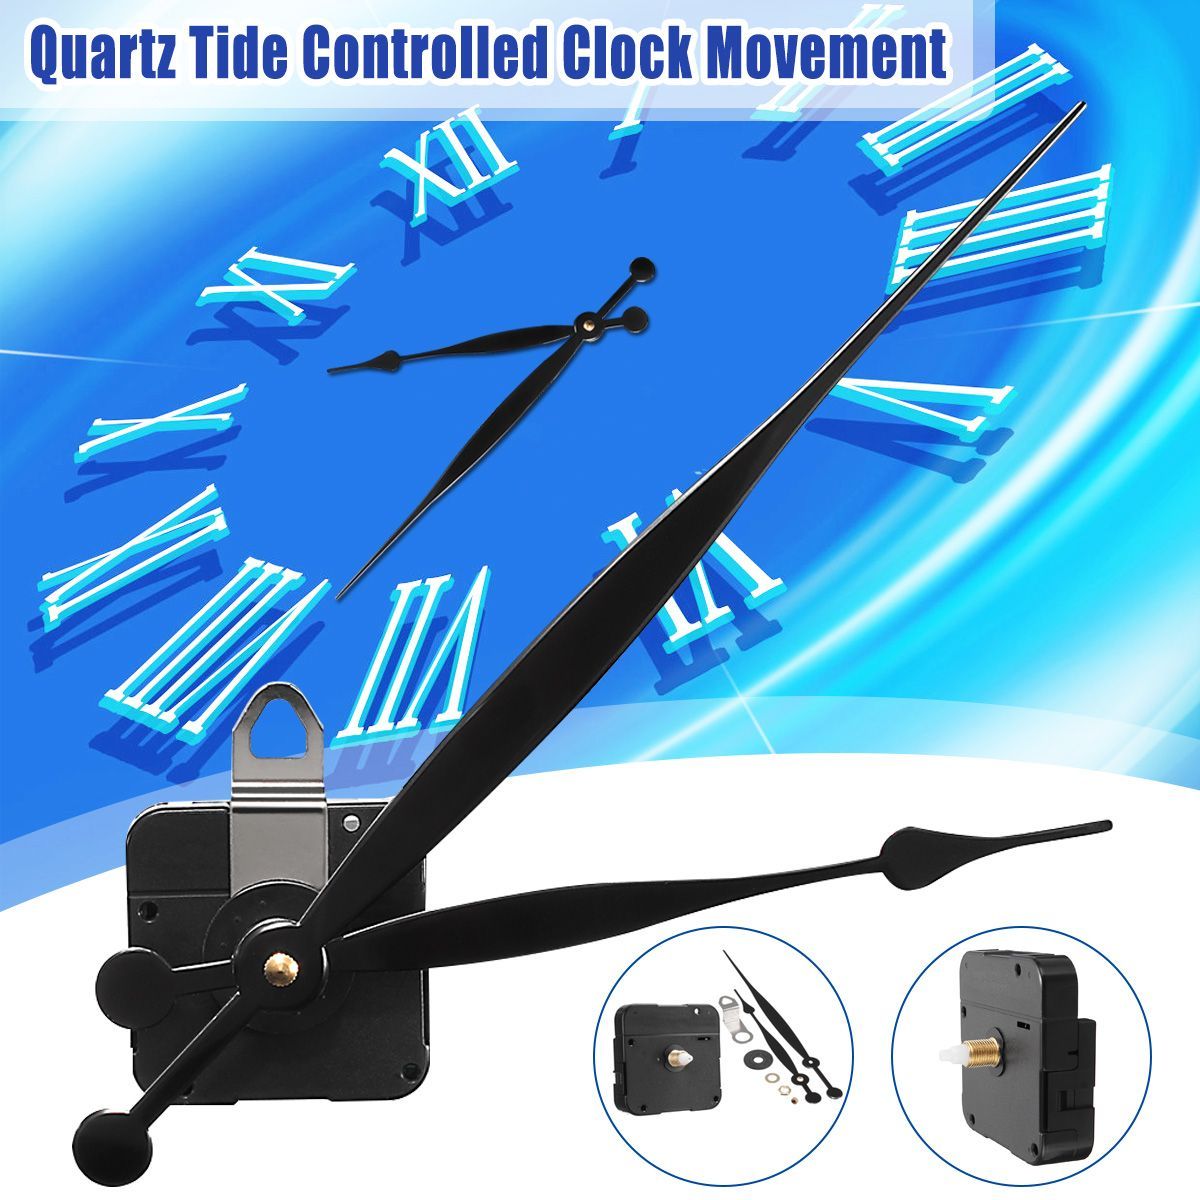 Long-Hand-Quartz-Clock-Movement-Mechanism-Motor-High-Torque-Hour-Minute-Hands-DIY-Module-Kit-1333713